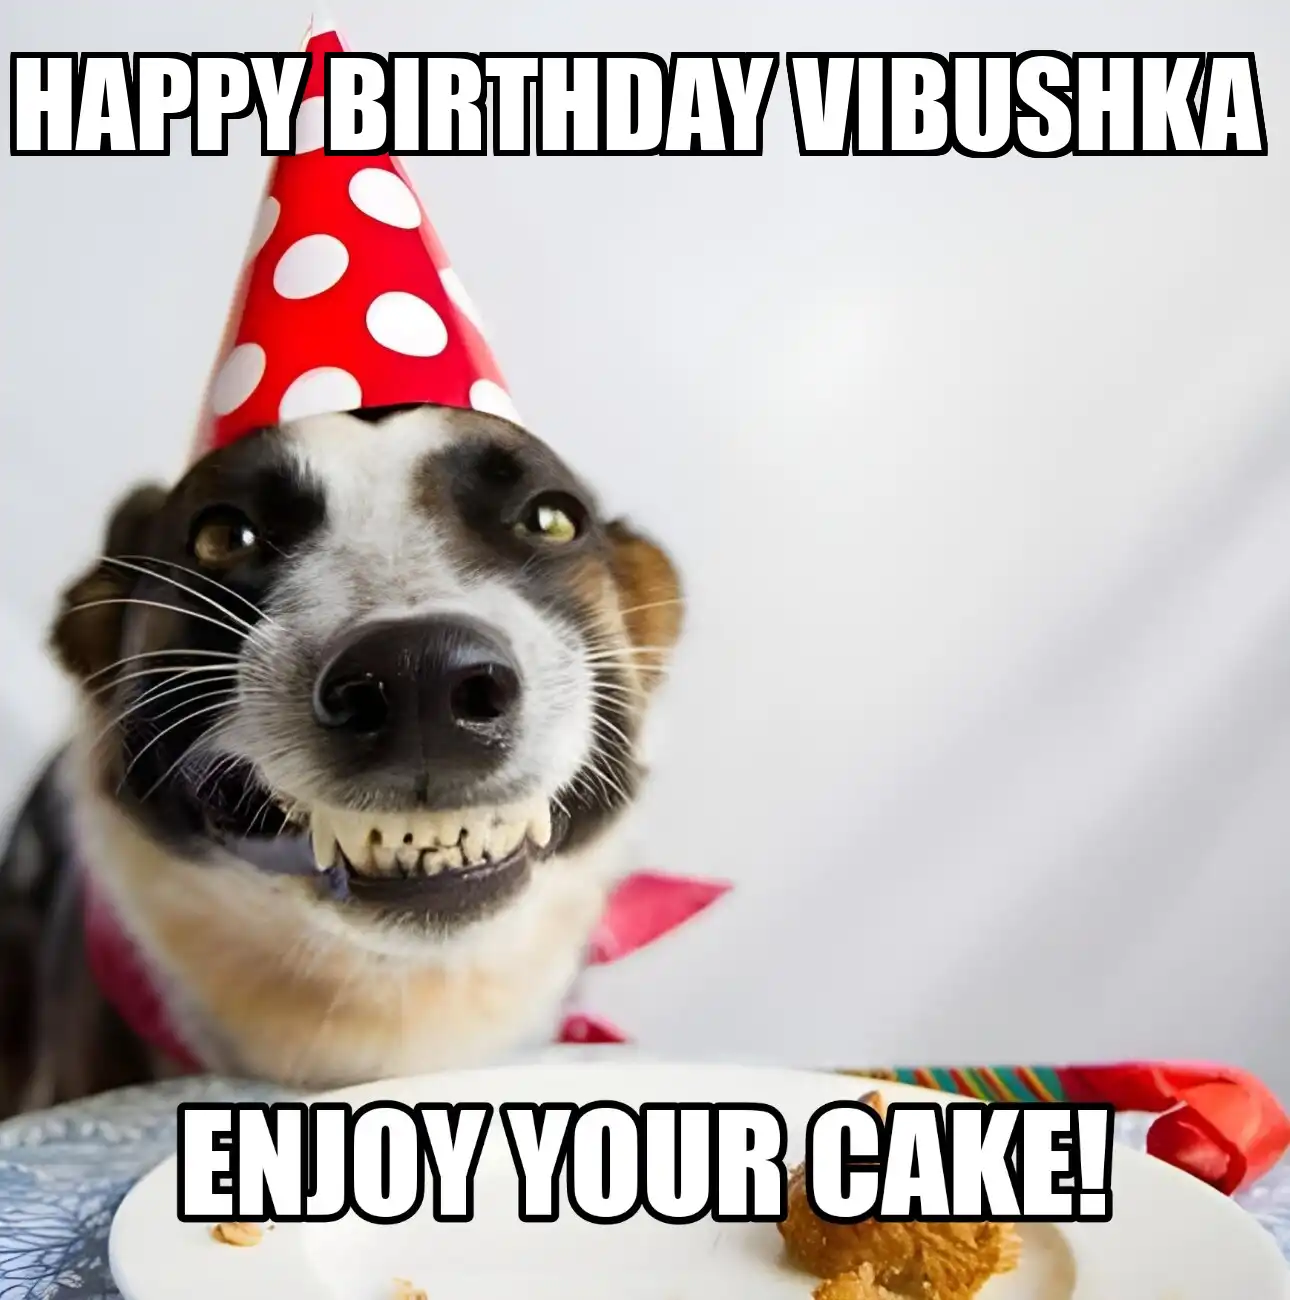 Happy Birthday Vibushka Enjoy Your Cake Dog Meme